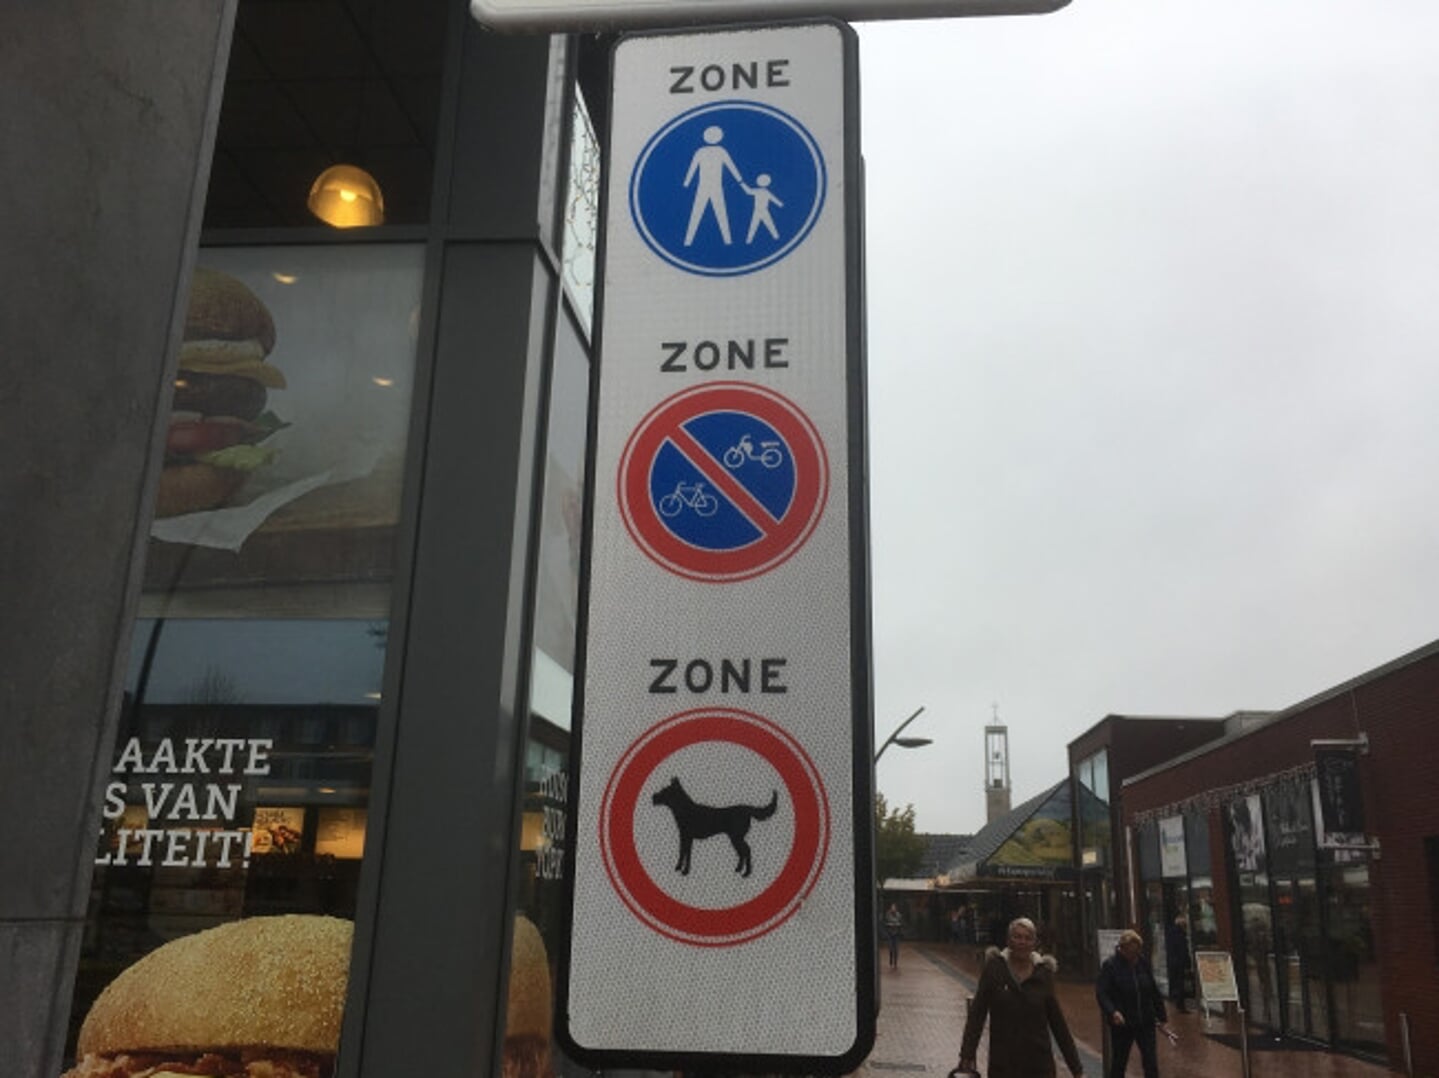 Winkelcentrum Suydersee is verboden voor honden.